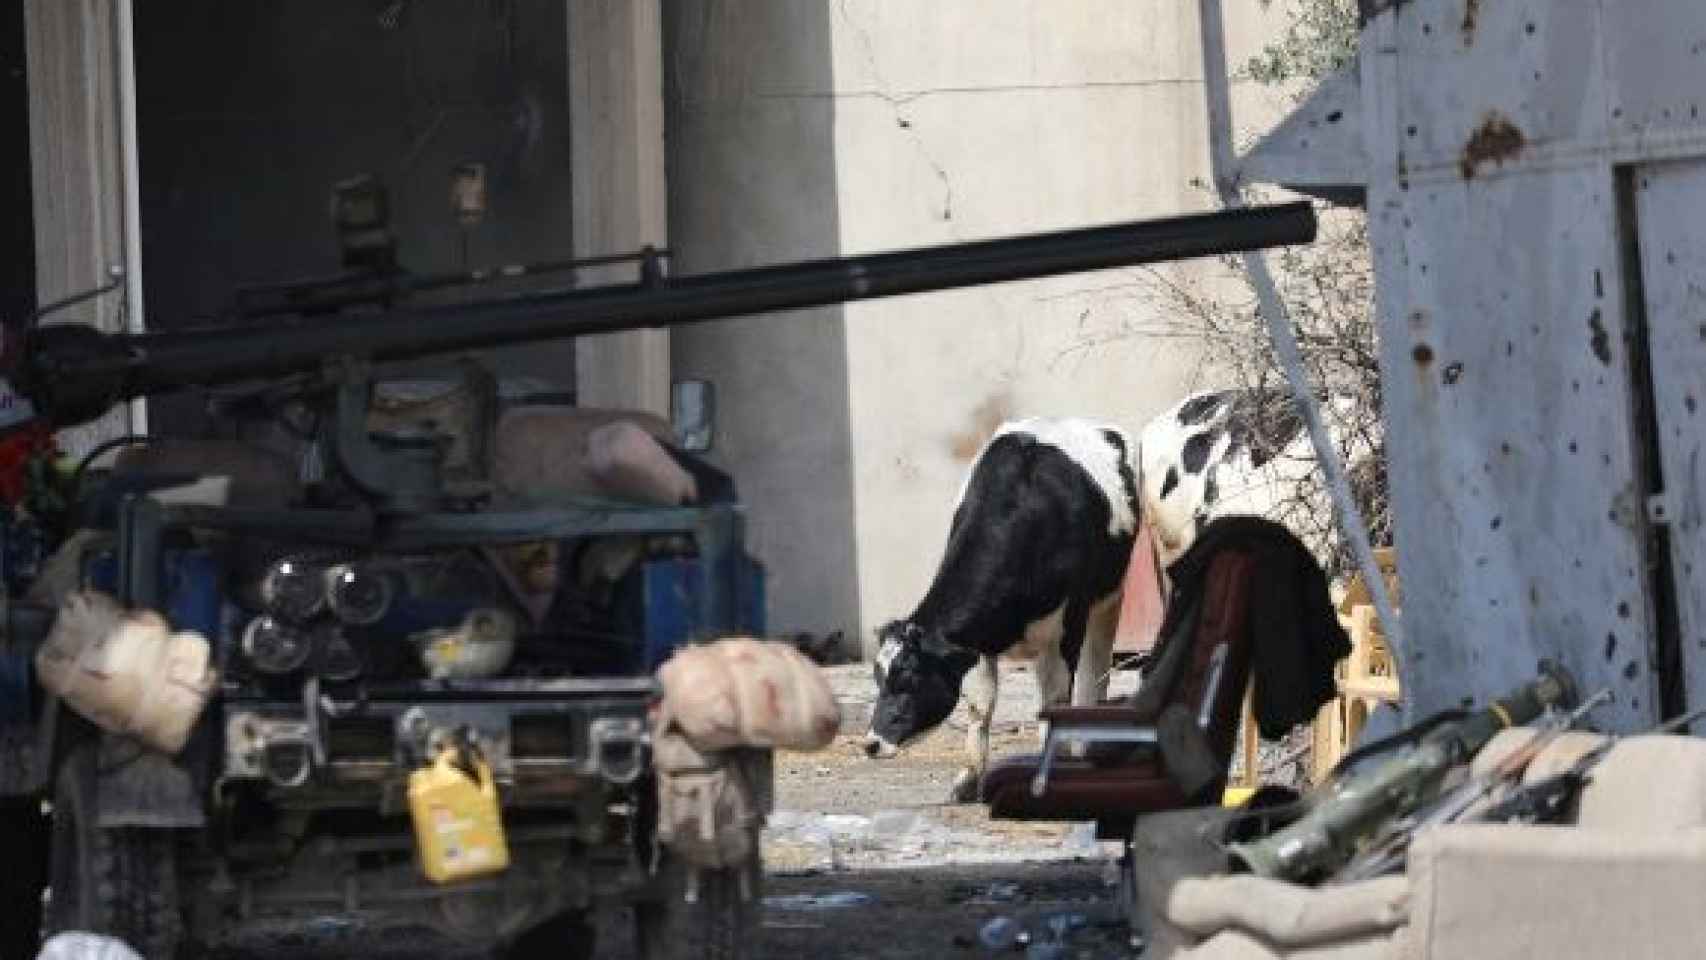 Las vacas bomba no provocaron daños personales